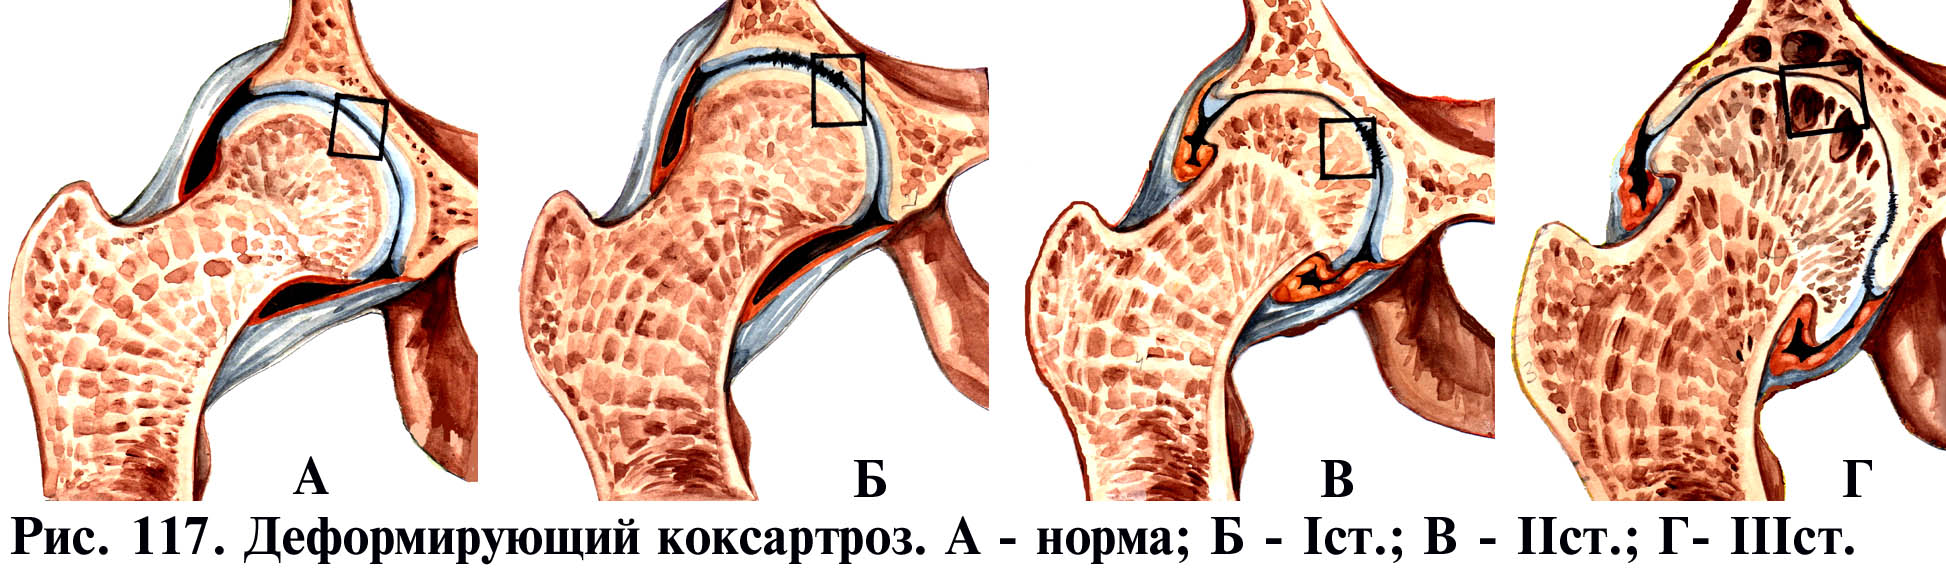 deformáló artrosis a kezekben az 1 fokozatú kezelés során